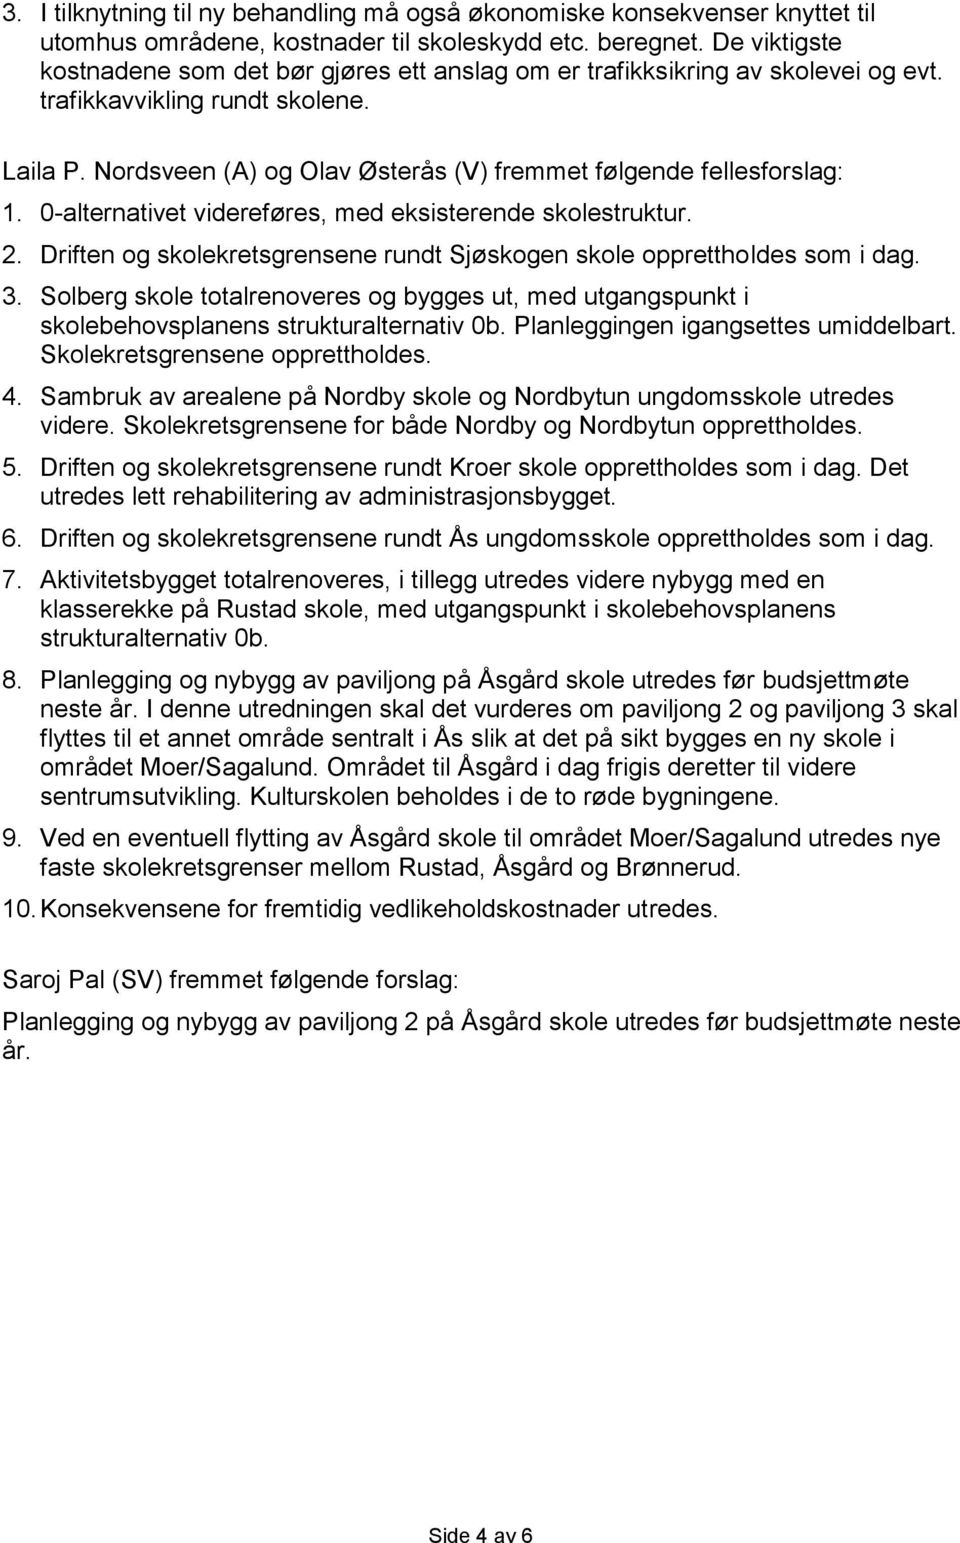 Nordsveen (A) og Olav Østerås (V) fremmet følgende fellesforslag: 1. 0-alternativet videreføres, med eksisterende skolestruktur. 2.